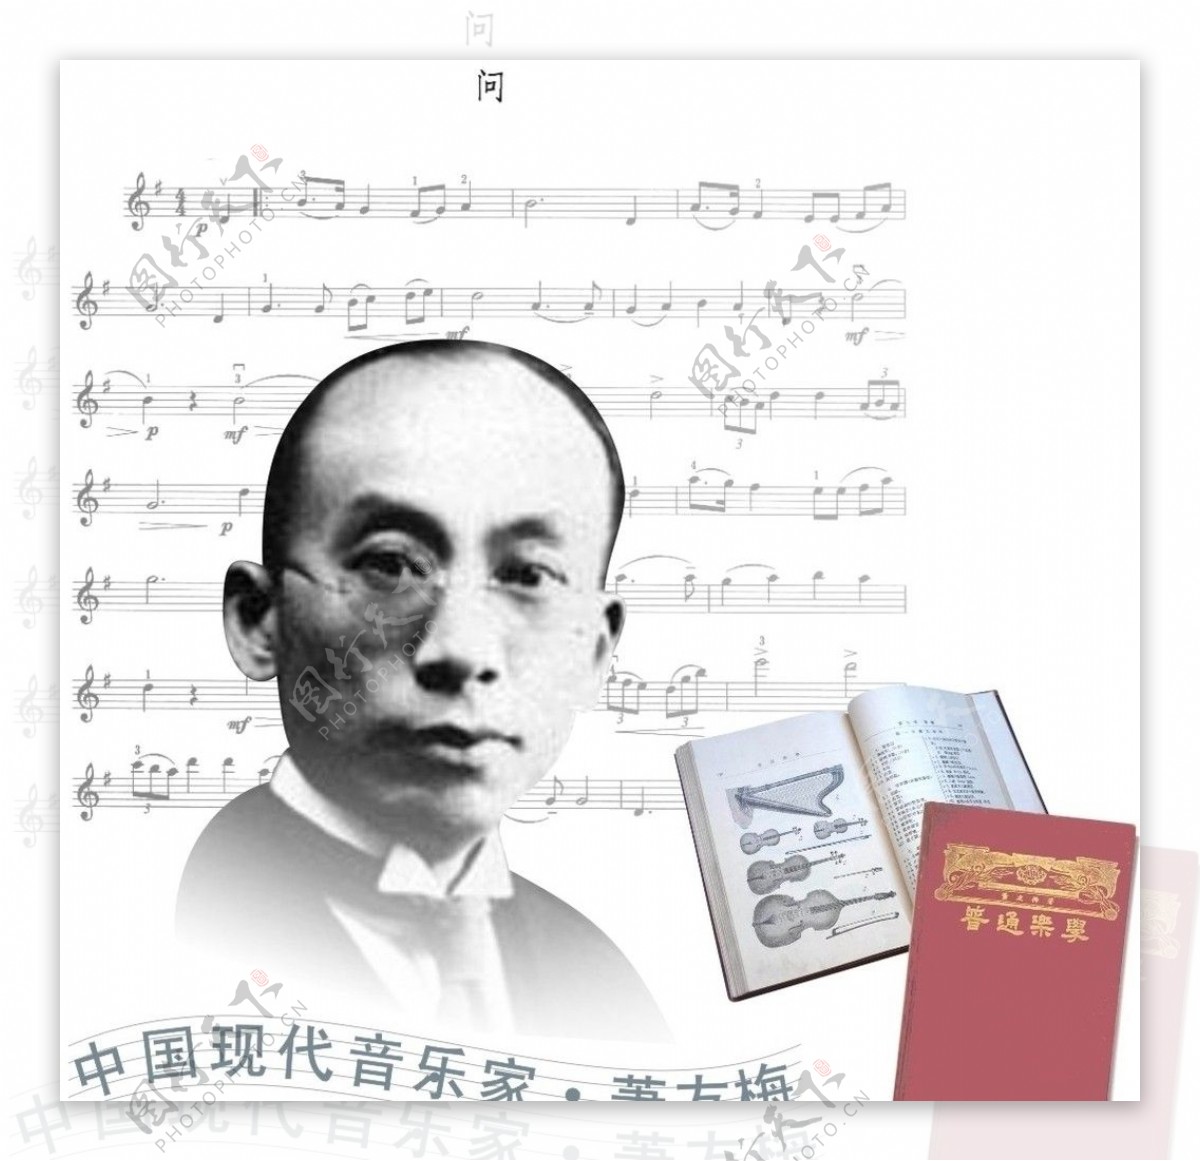 中国现代音乐家萧友梅图片